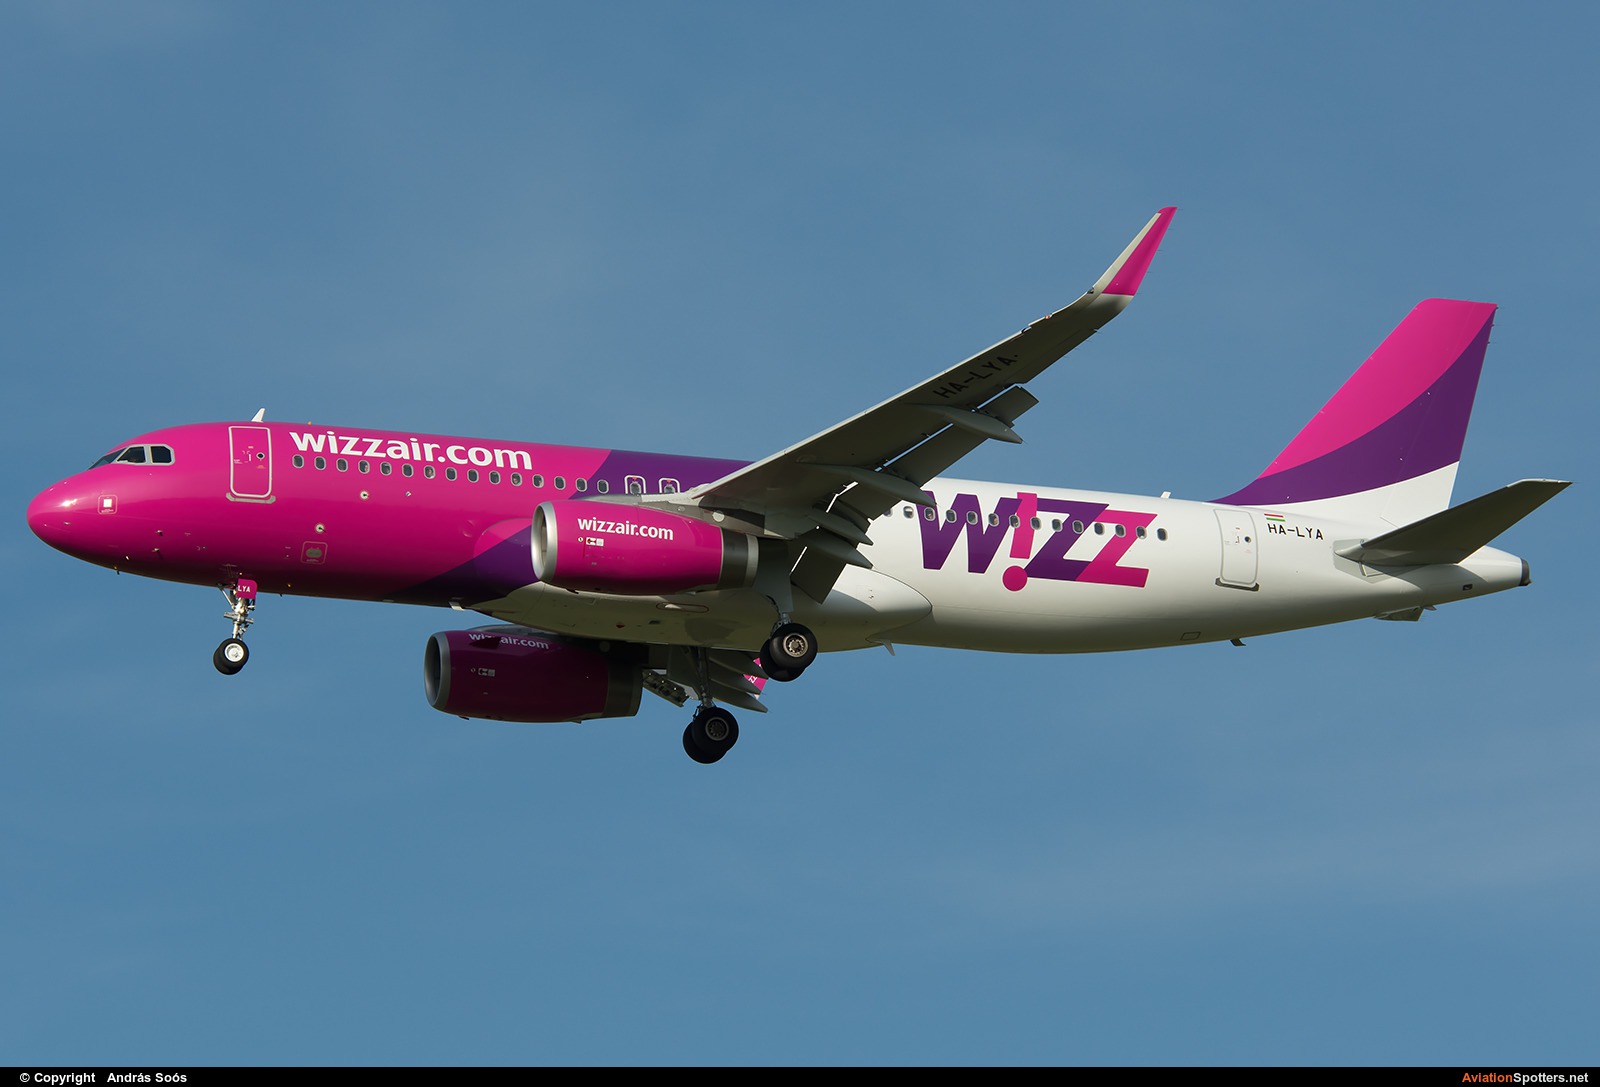 Wizz Air  -  A320  (HA-LYA) By András Soós (sas1965)